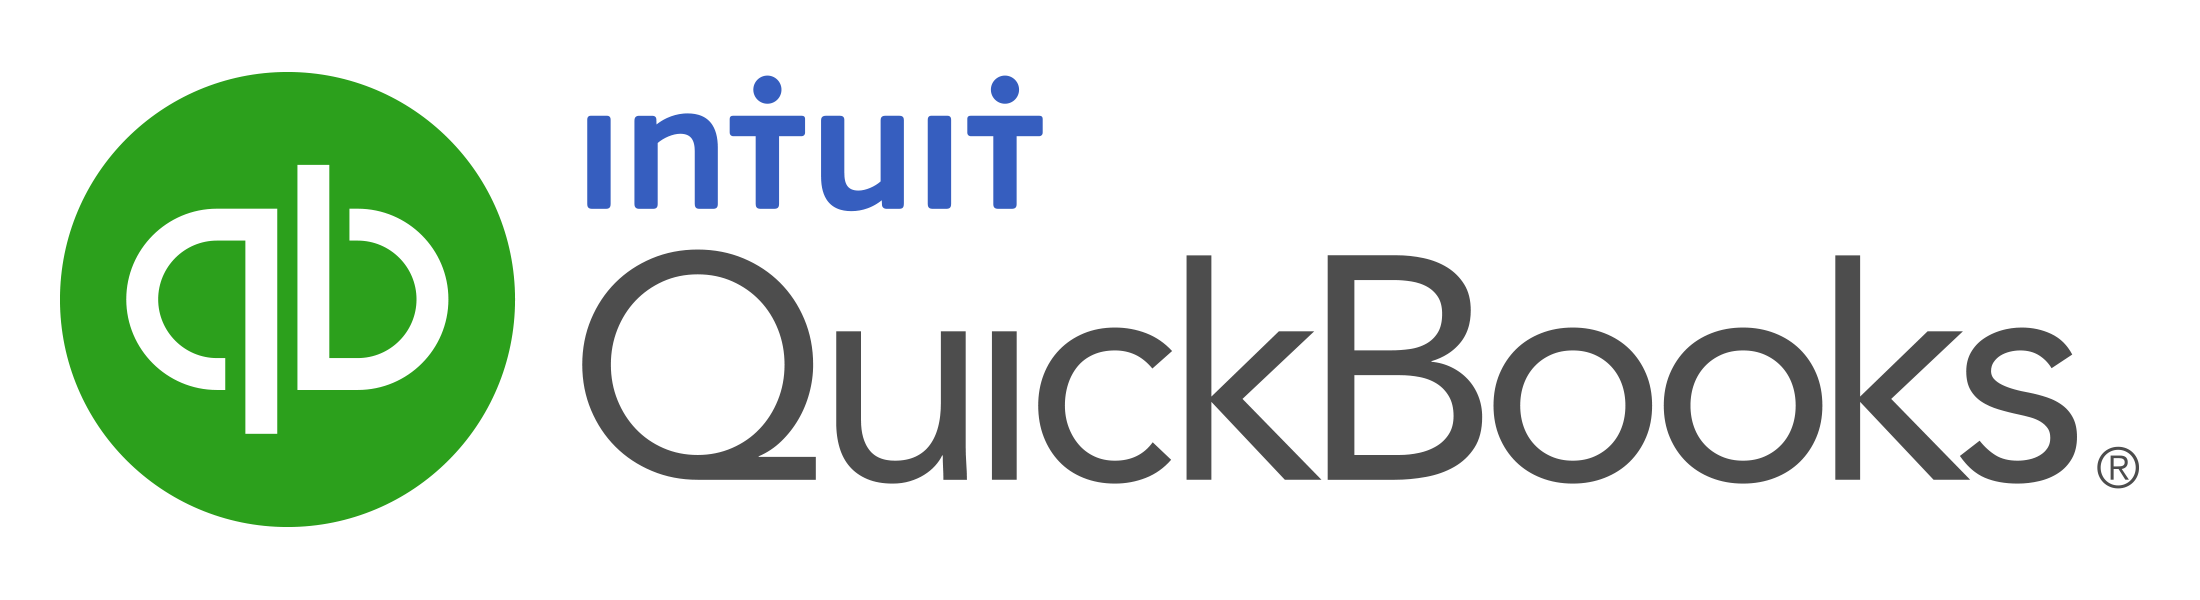 Quickbooks_intuit_logo.png